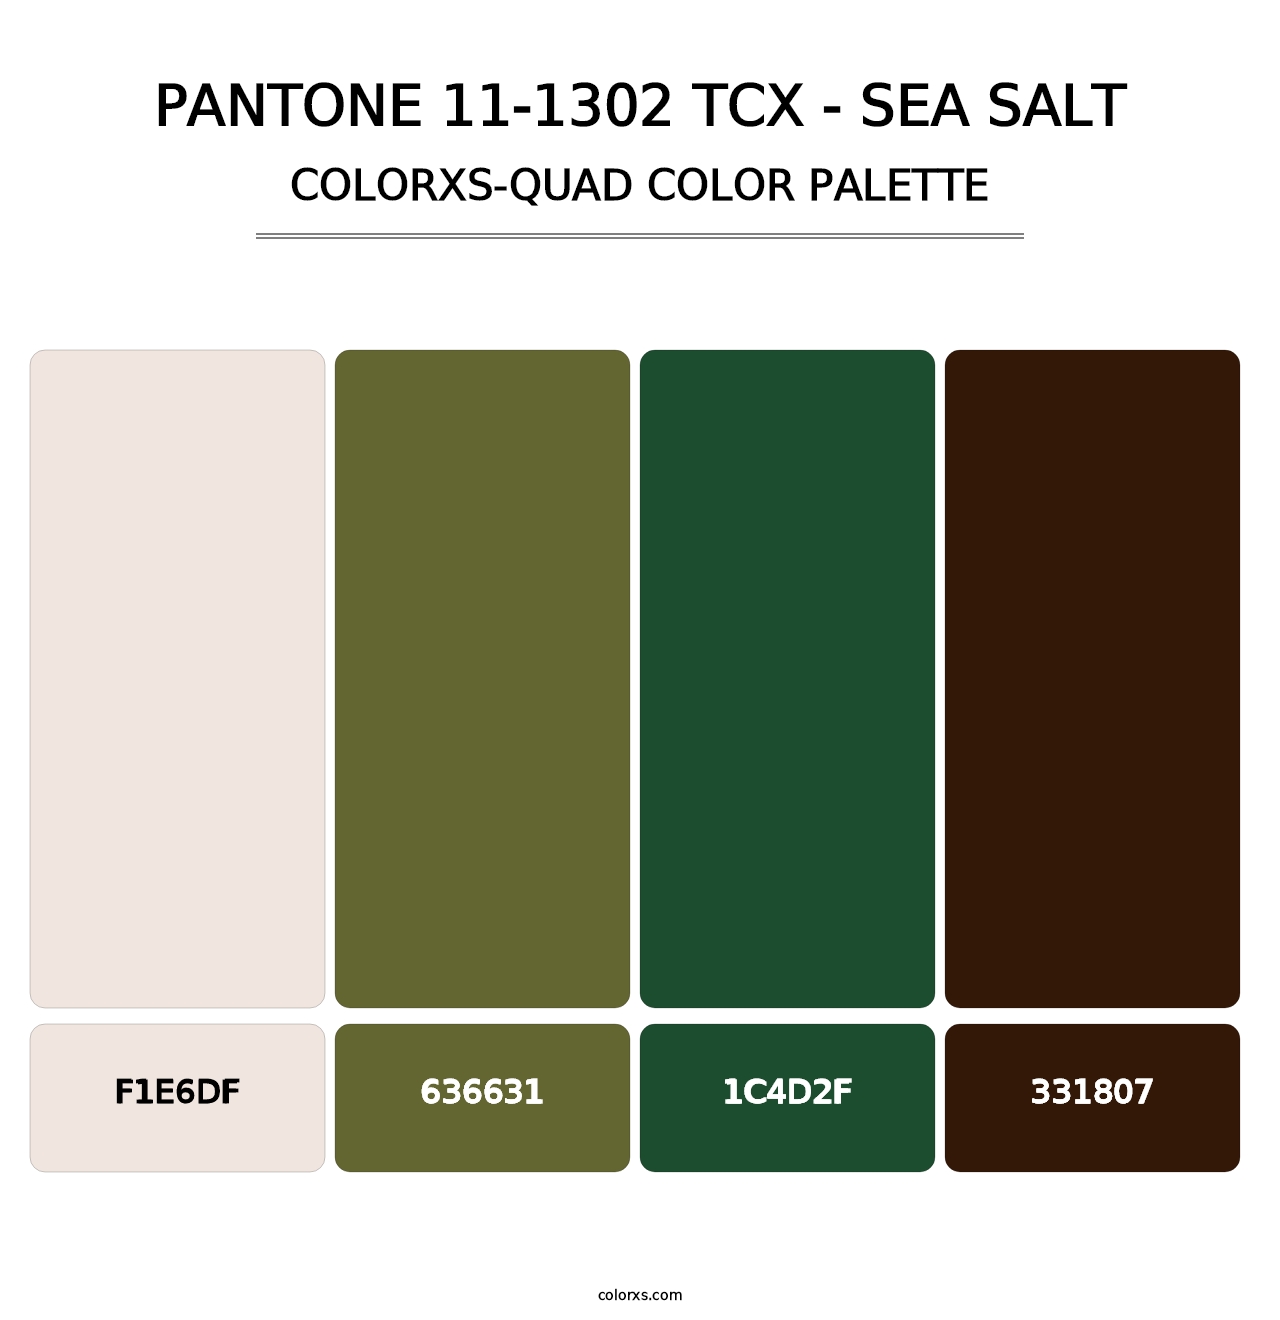 PANTONE 11-1302 TCX - Sea Salt - Colorxs Quad Palette